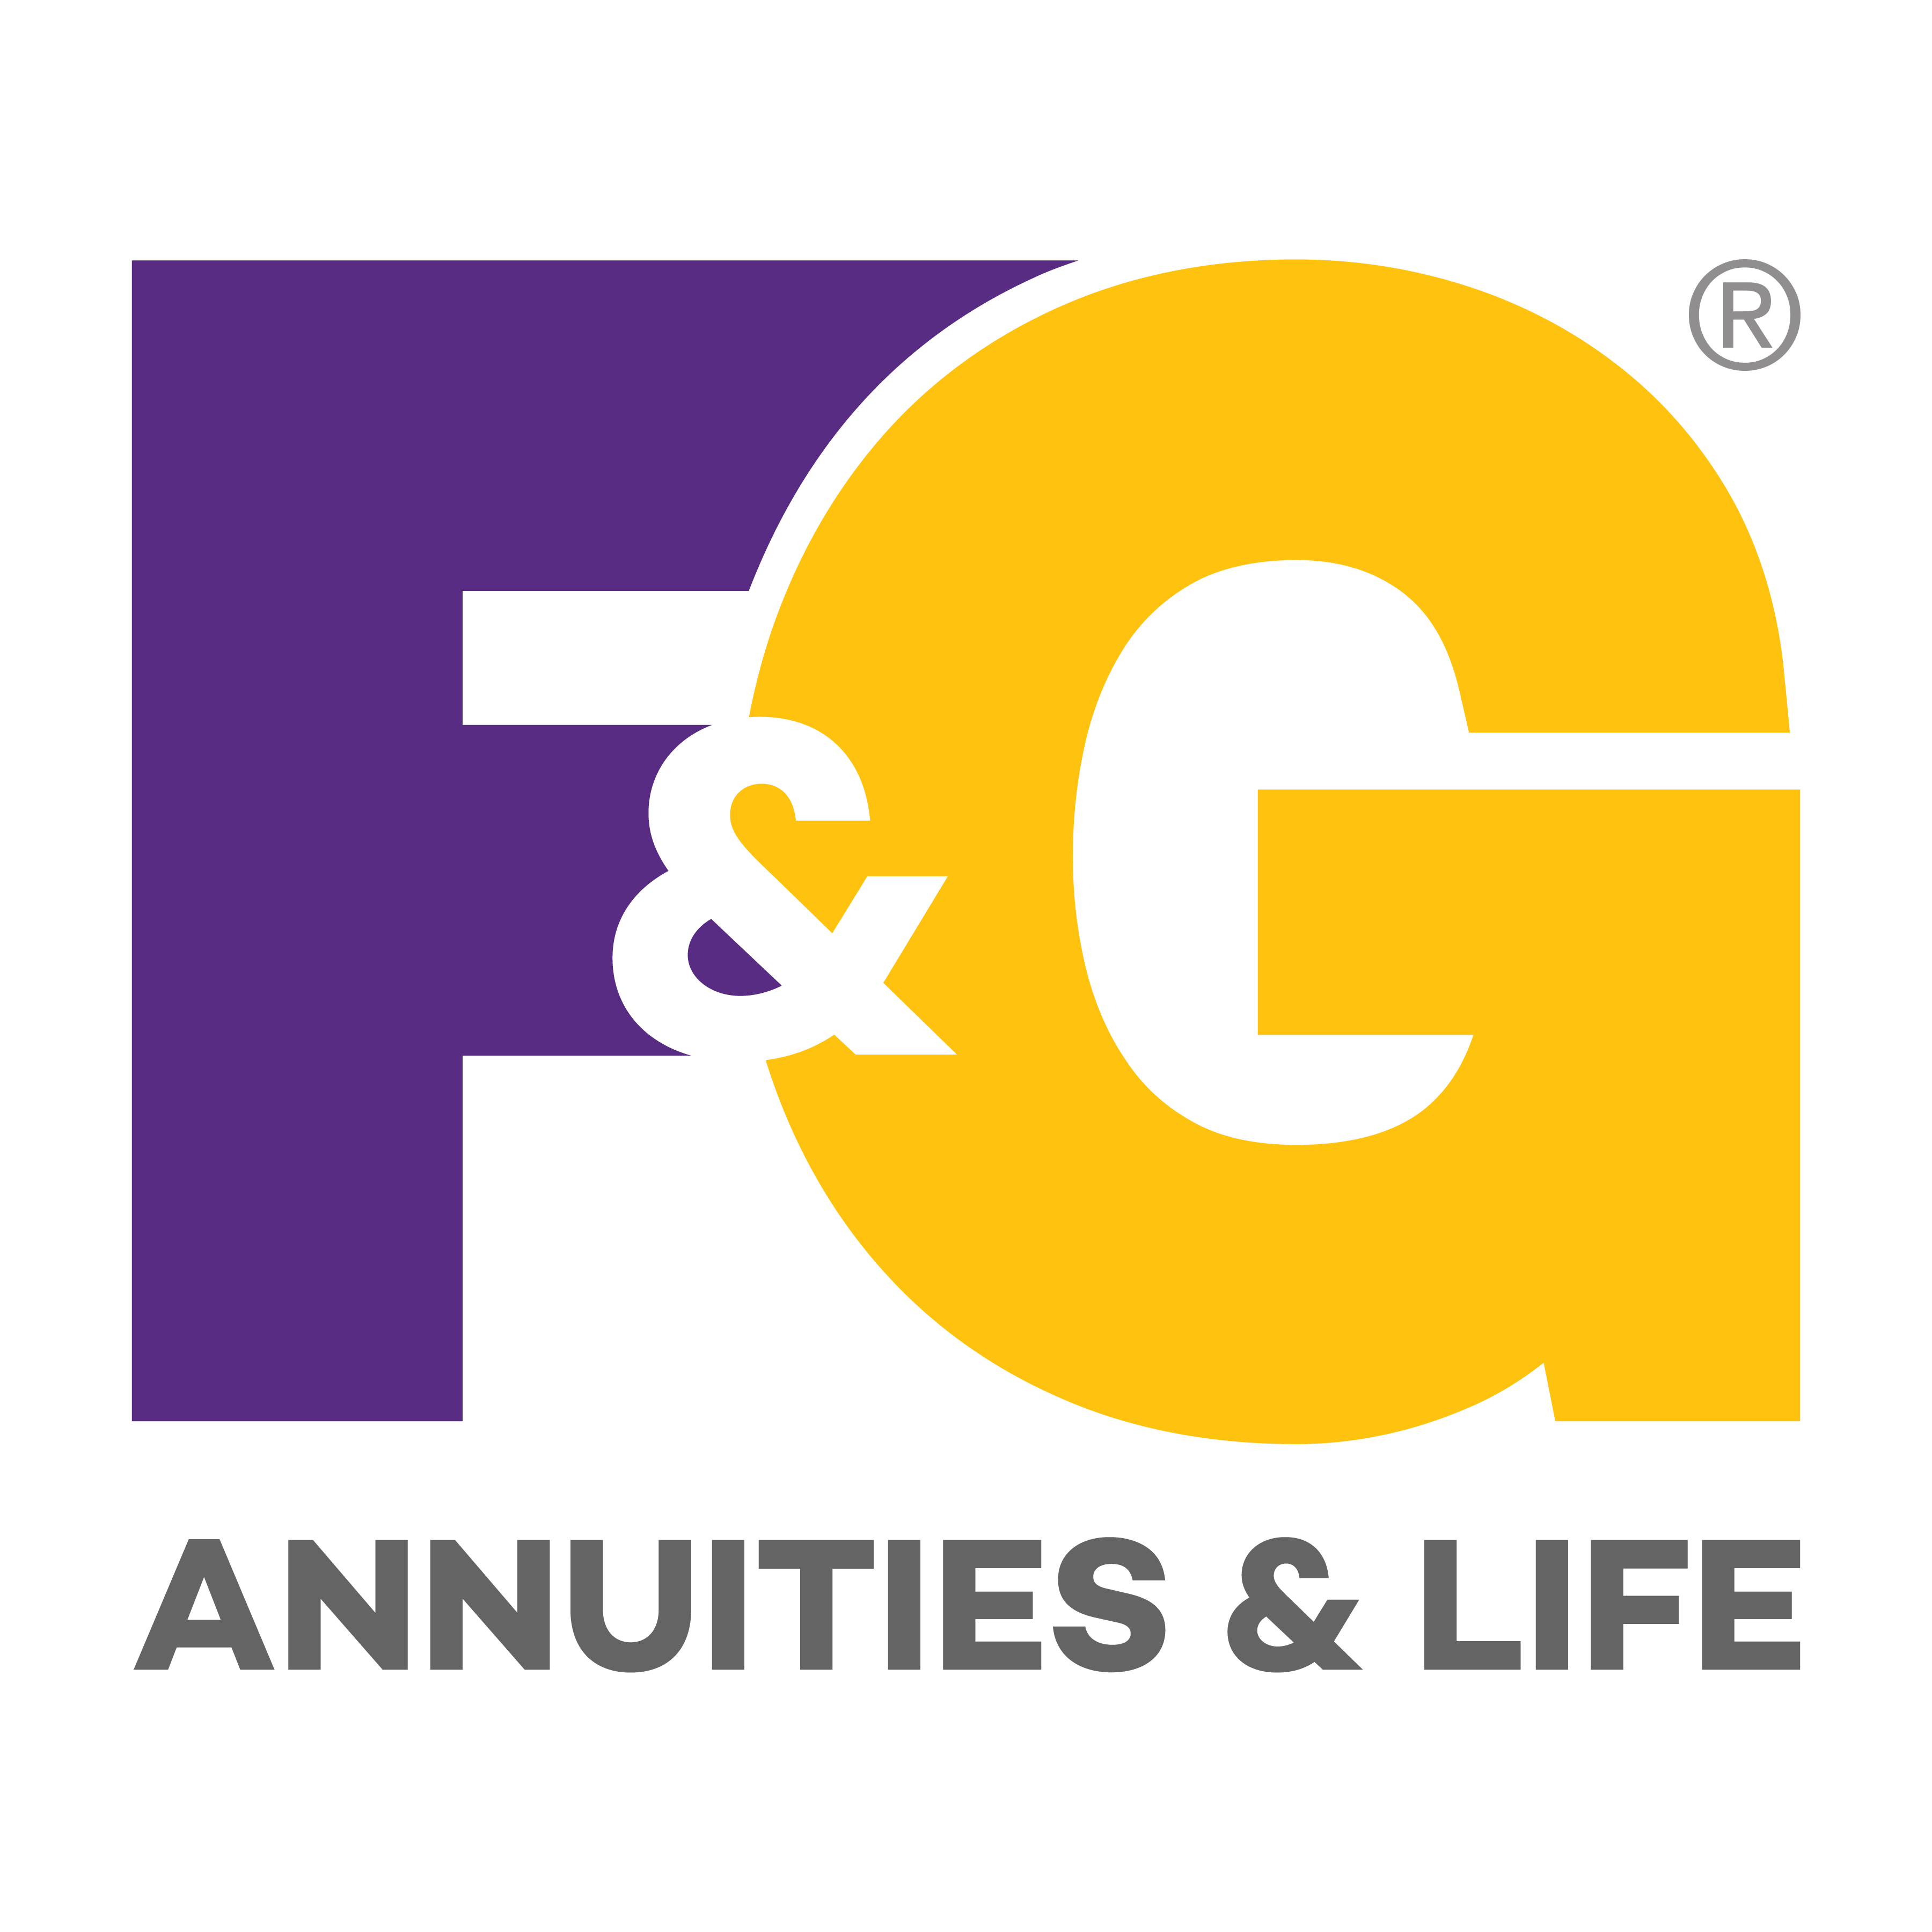 fg-logo_full-color_rgb